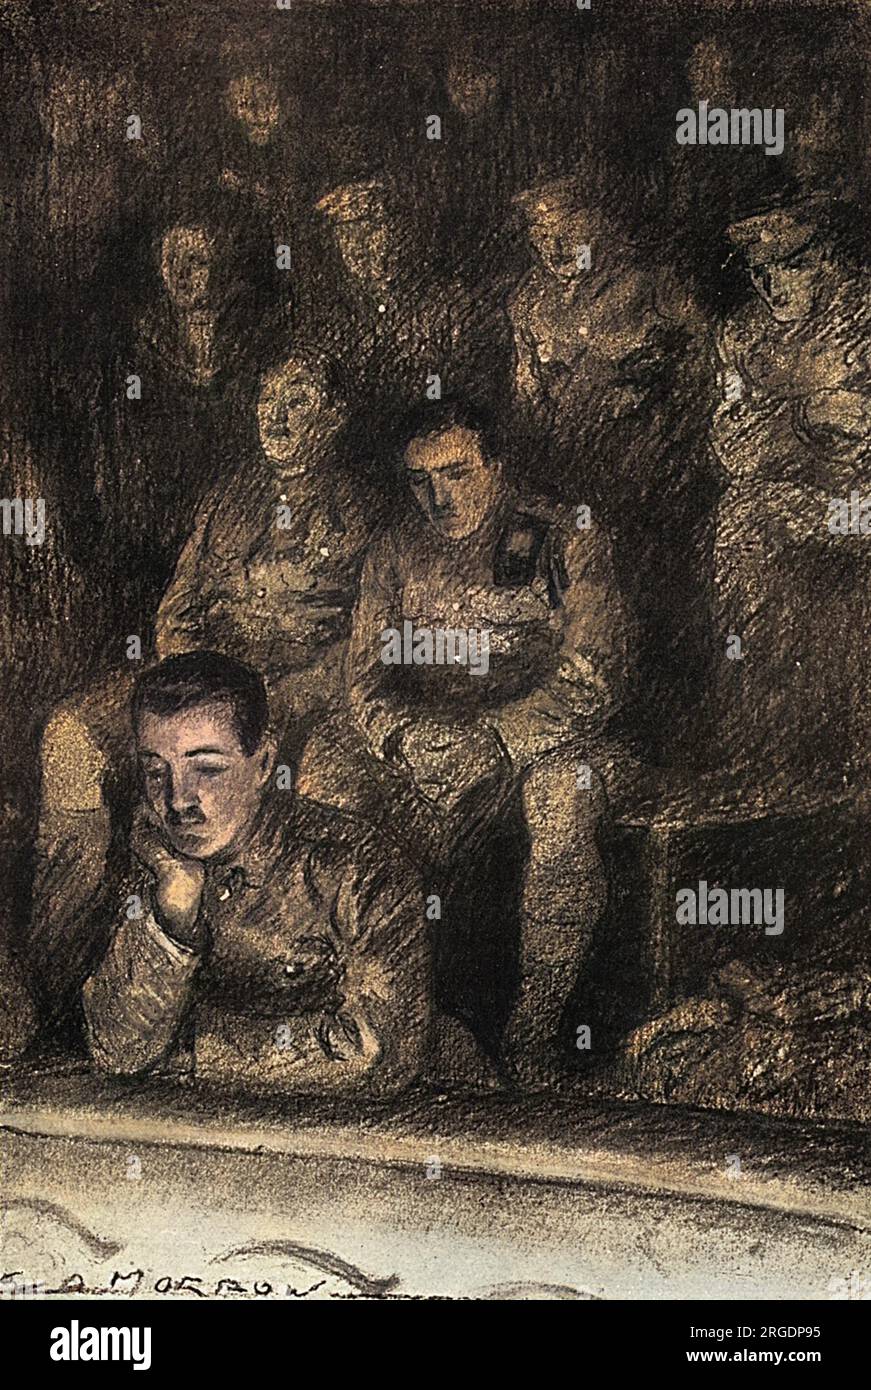 Eine Illustration des Zuschauers von Soldaten, die die Oper von einem hohen Aussichtspunkt aus betrachten, alle in voller Militäruniform und mit einem traurigen Ausdruck. Stockfoto